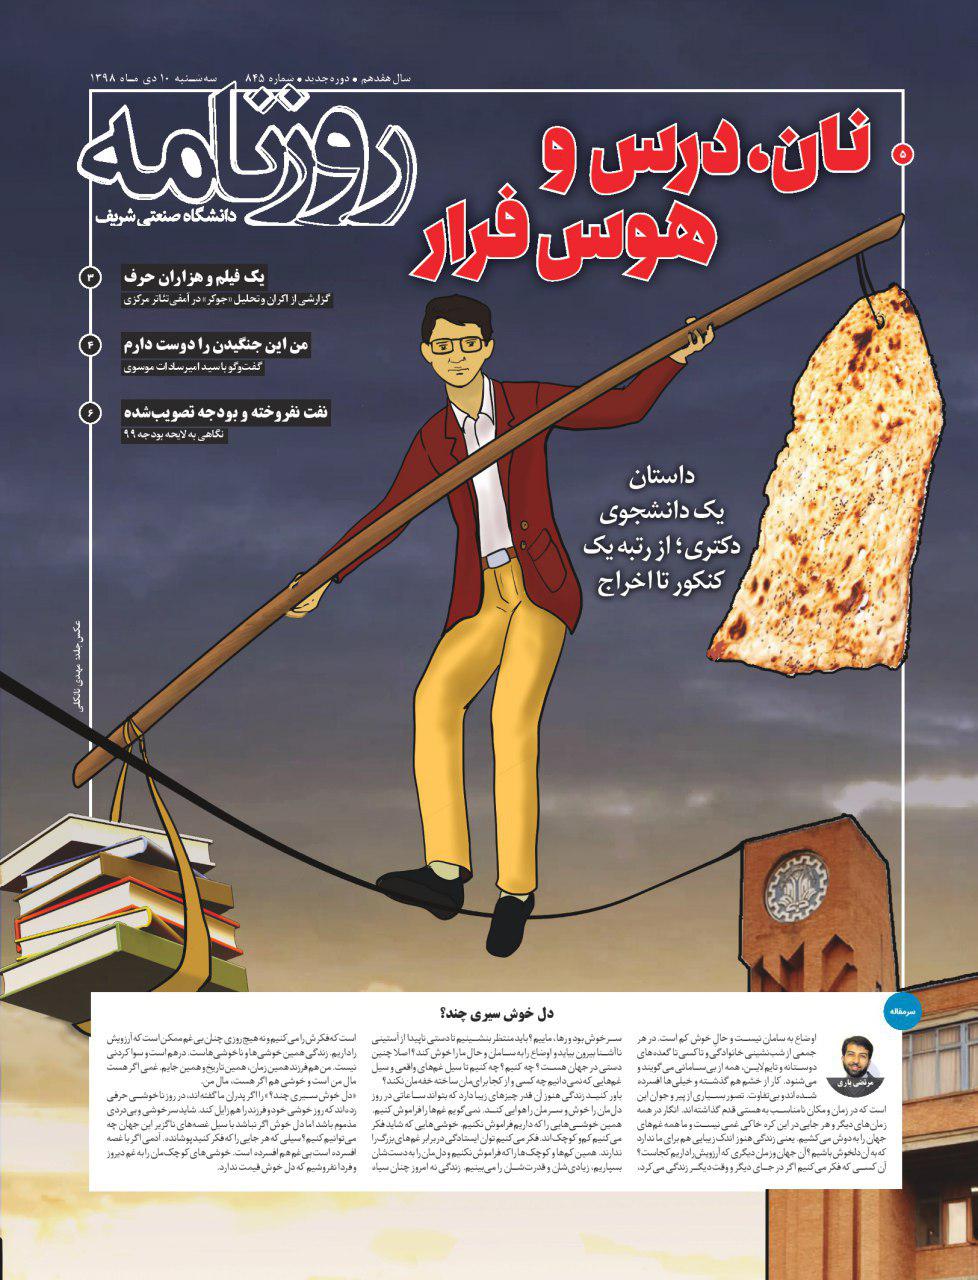 نان، درس و هوس فرار/ شماره ۸۴۵ نشریه دانشجویی «روزنامه شریف» منتشر شد